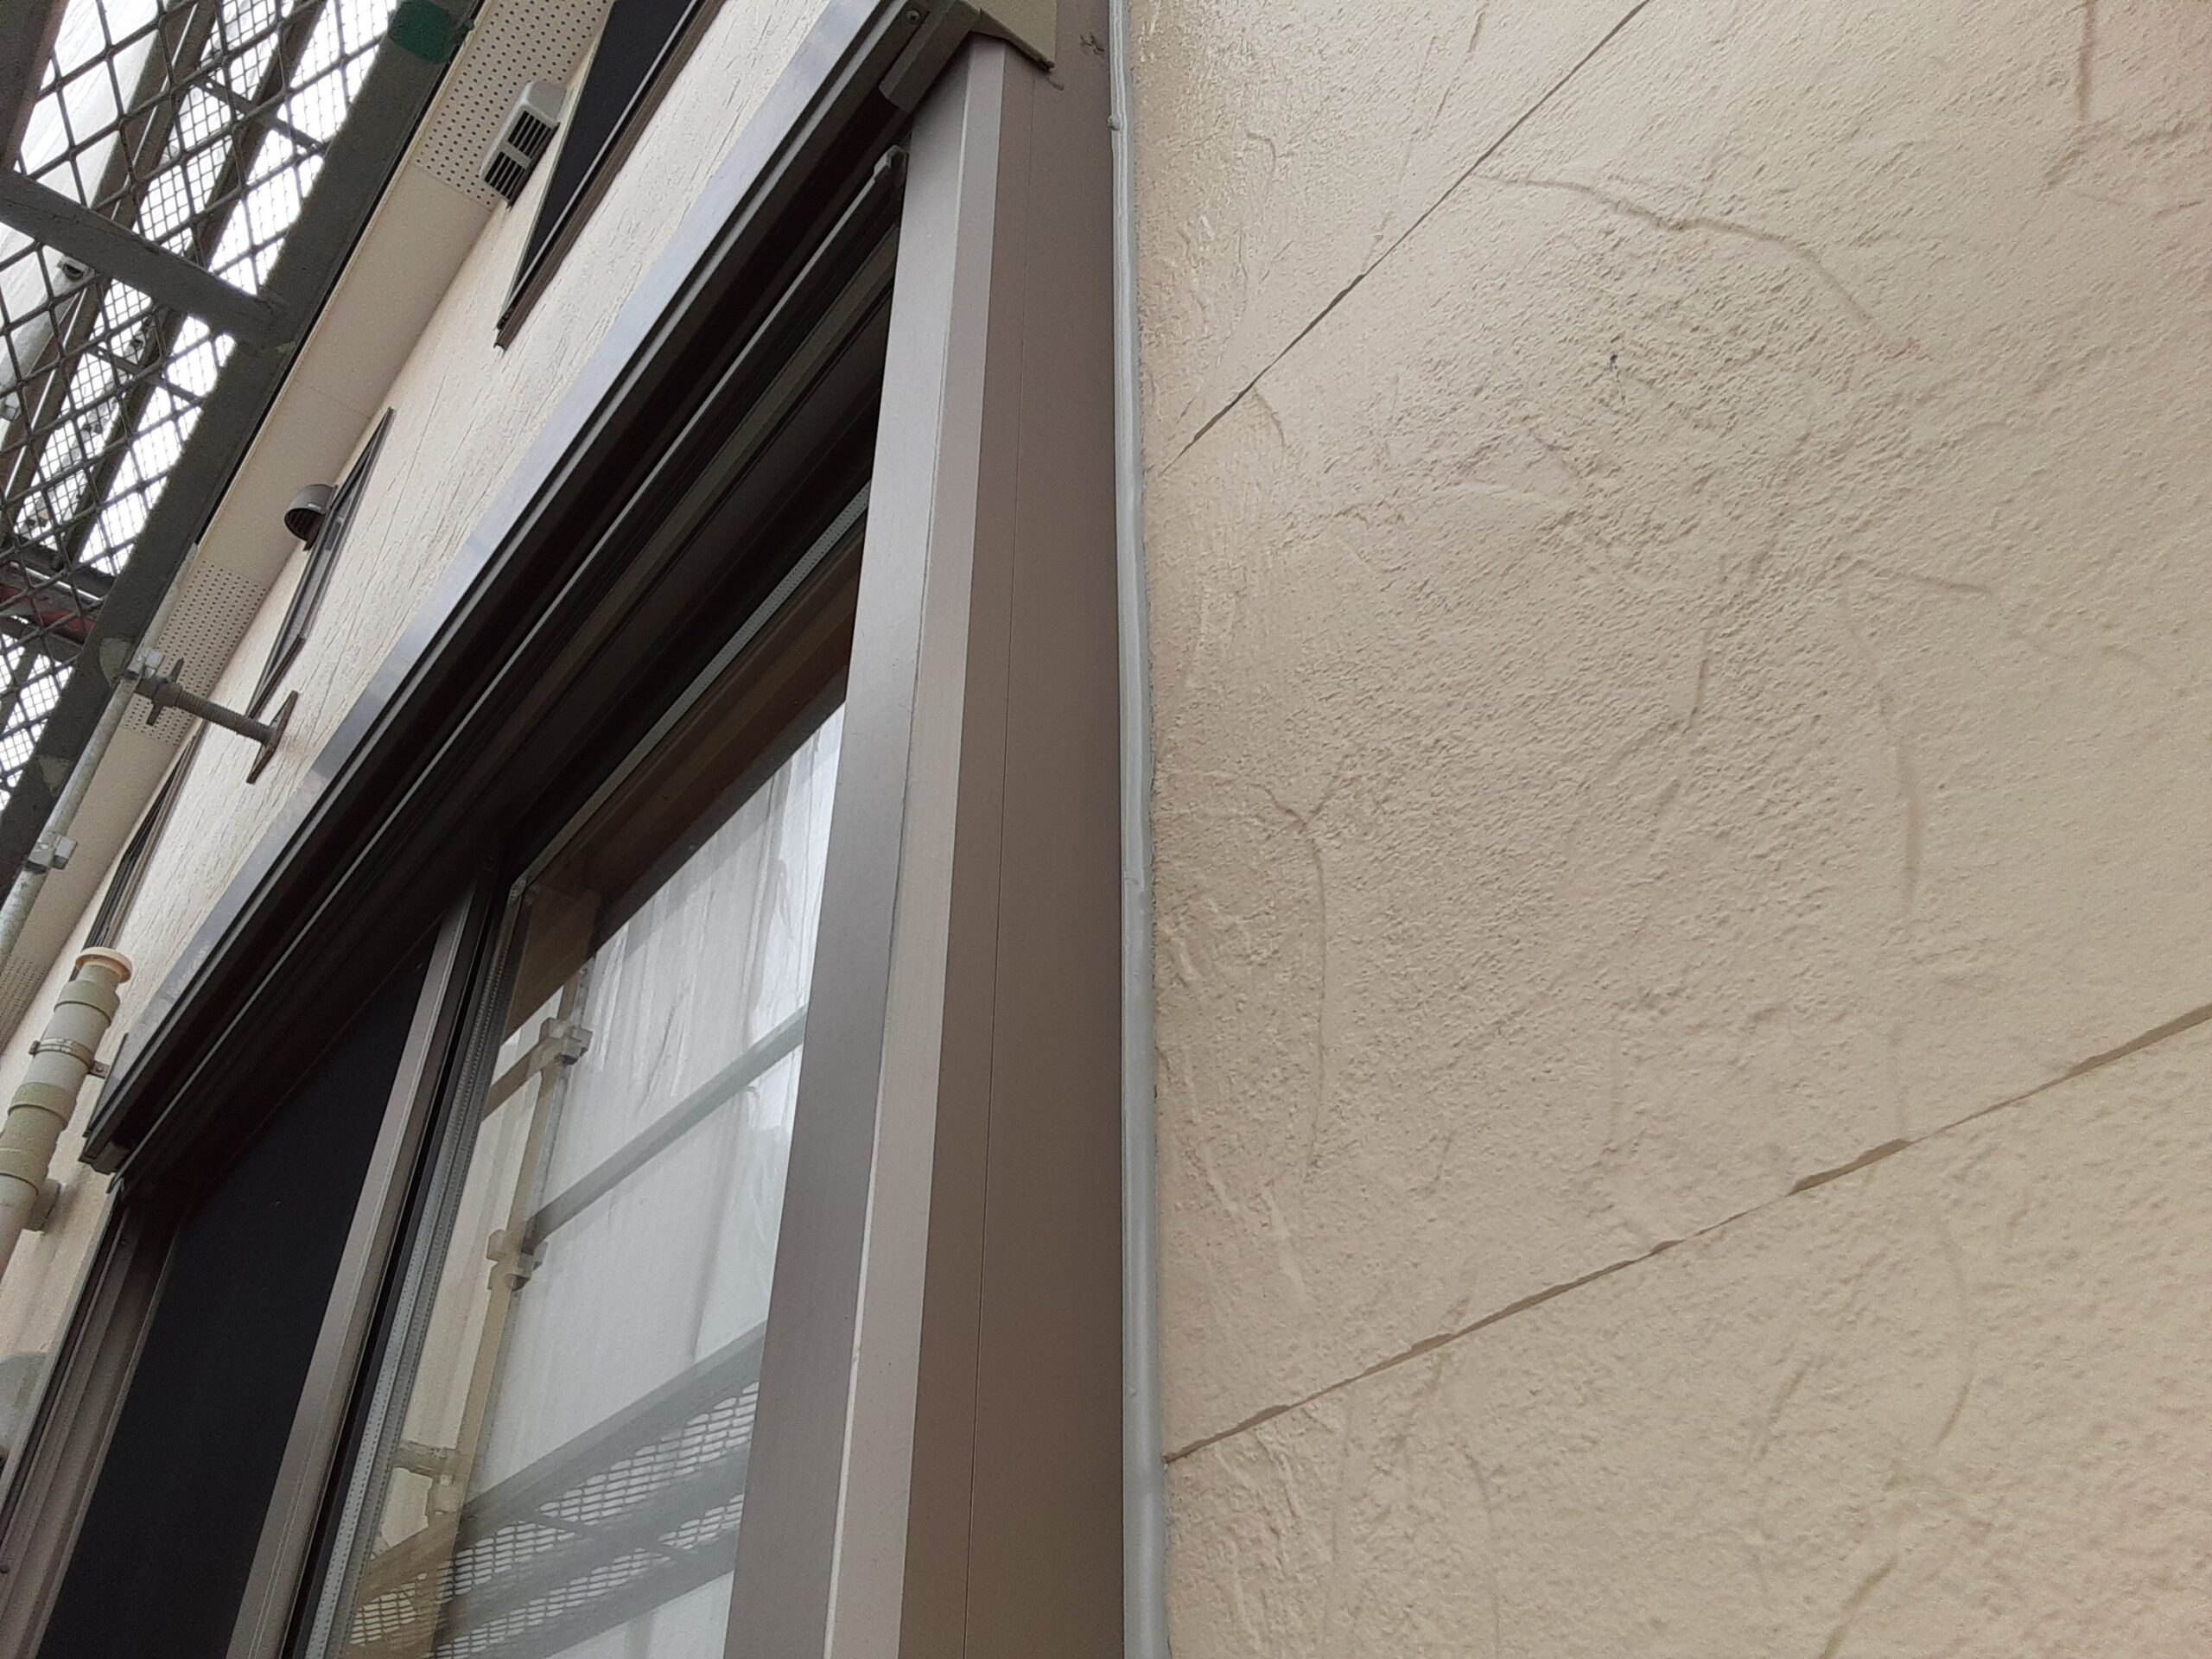 埼玉県さいたま市見沼区の(木造2階建て)T様邸にて塗り替えリホーム中外壁のコーキングの打ち替え、外壁塗装の養生